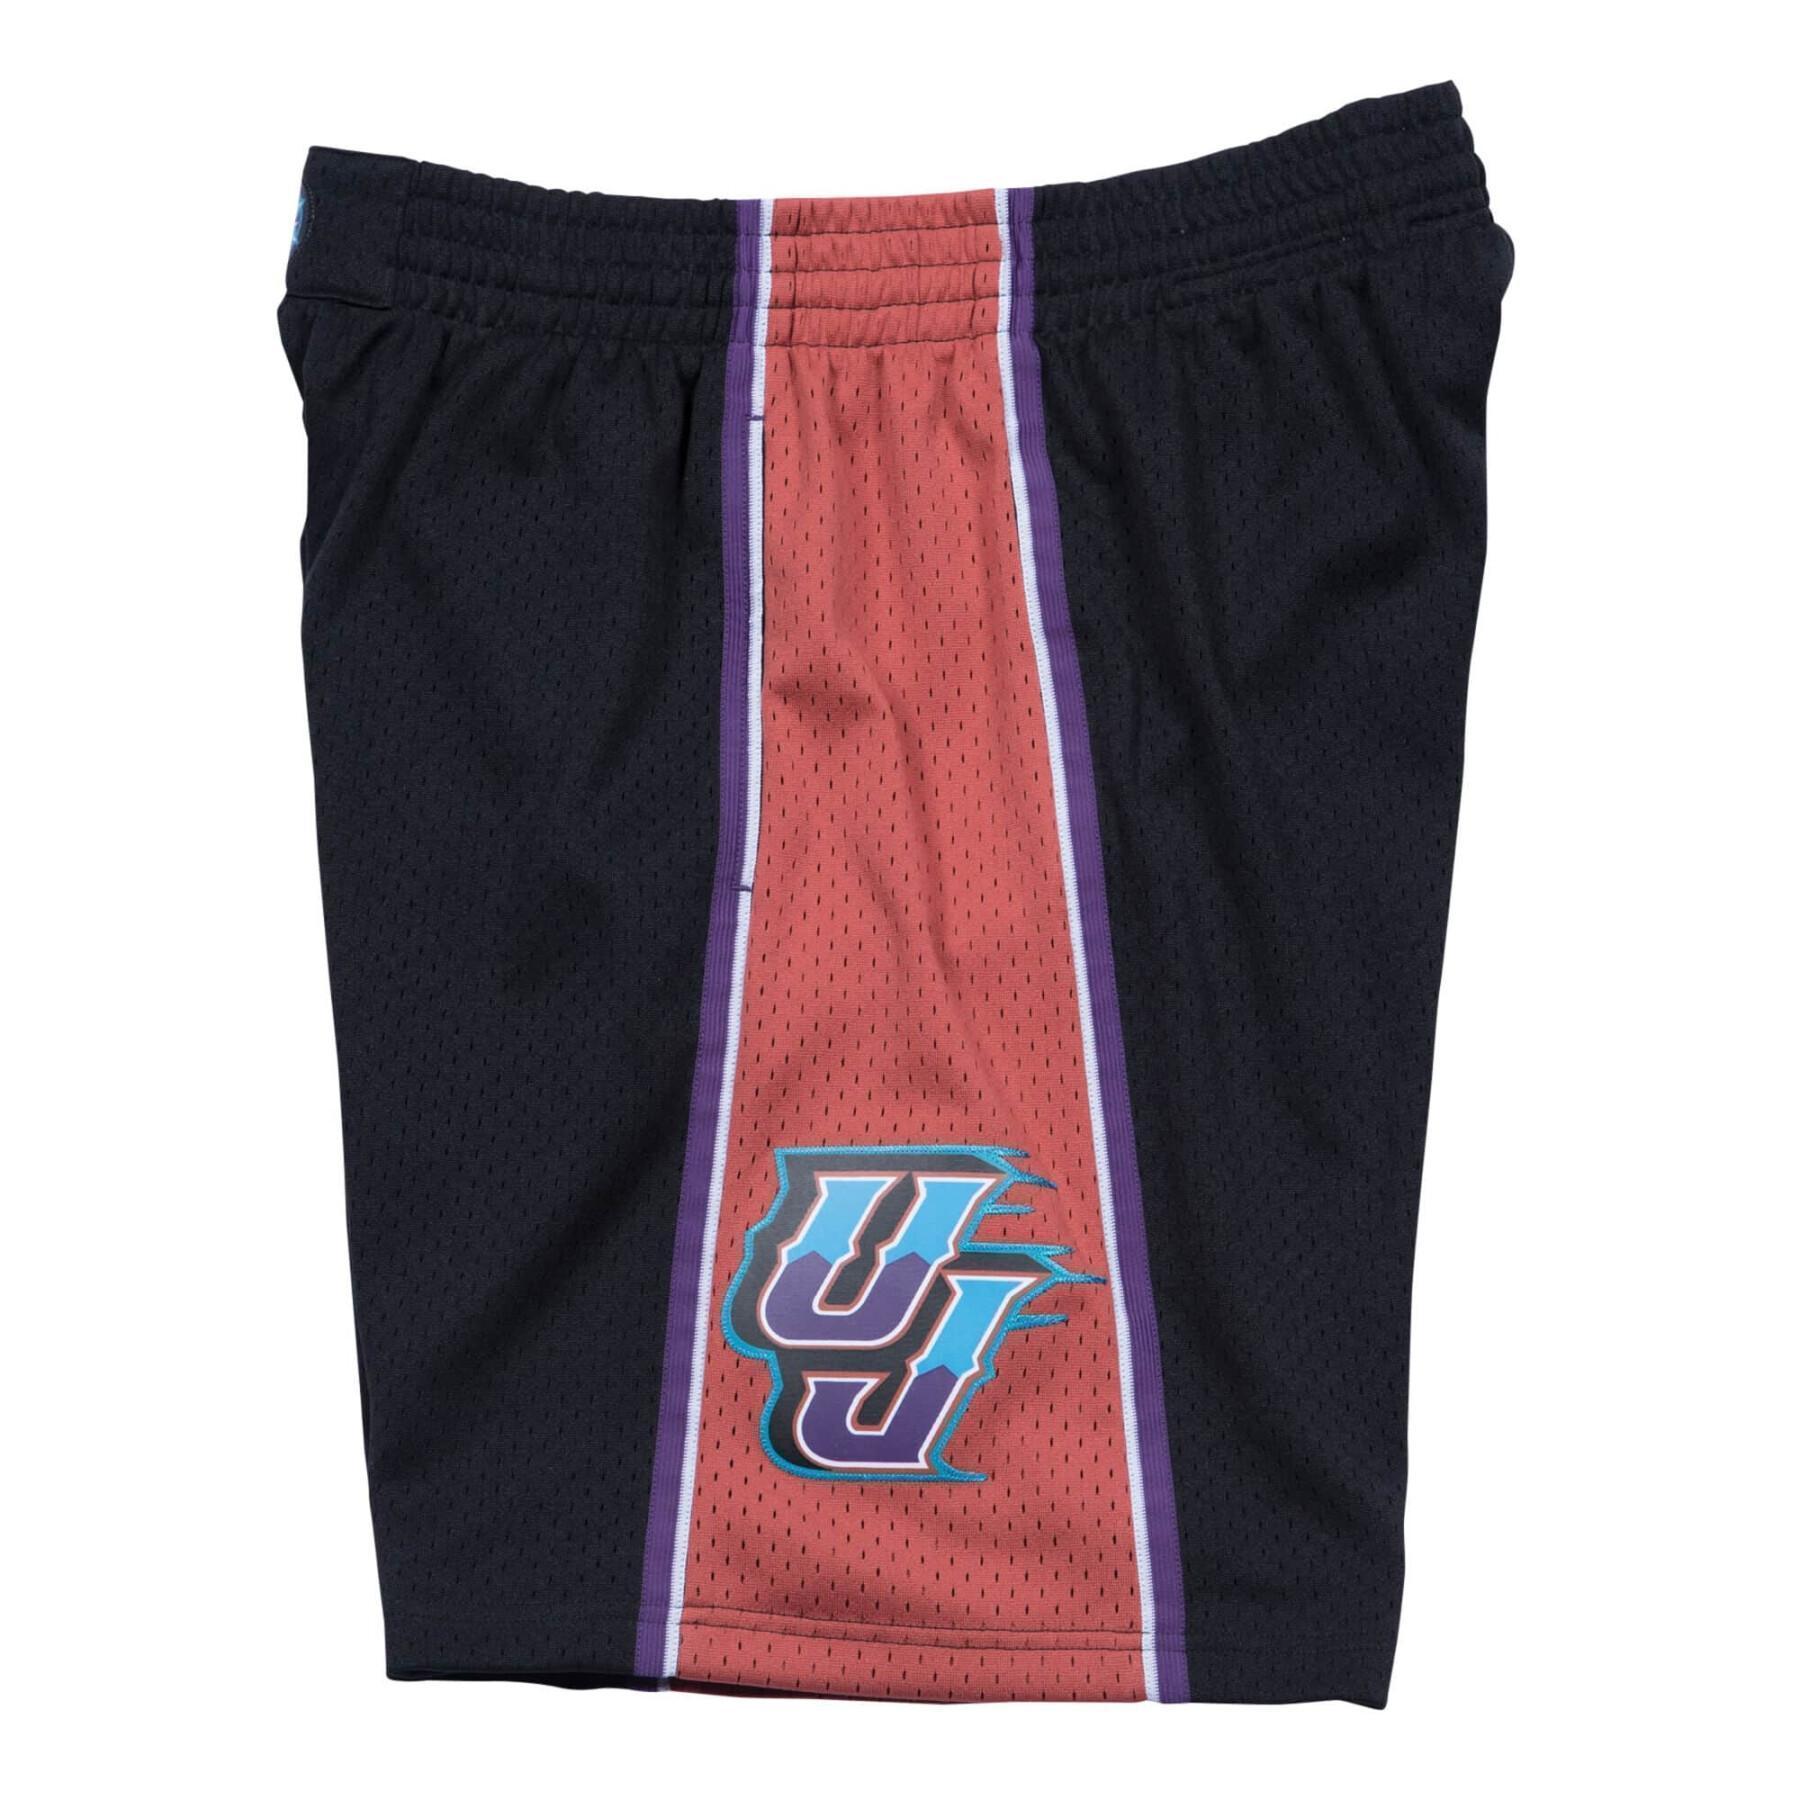 Swingman shorts Utah Jazz